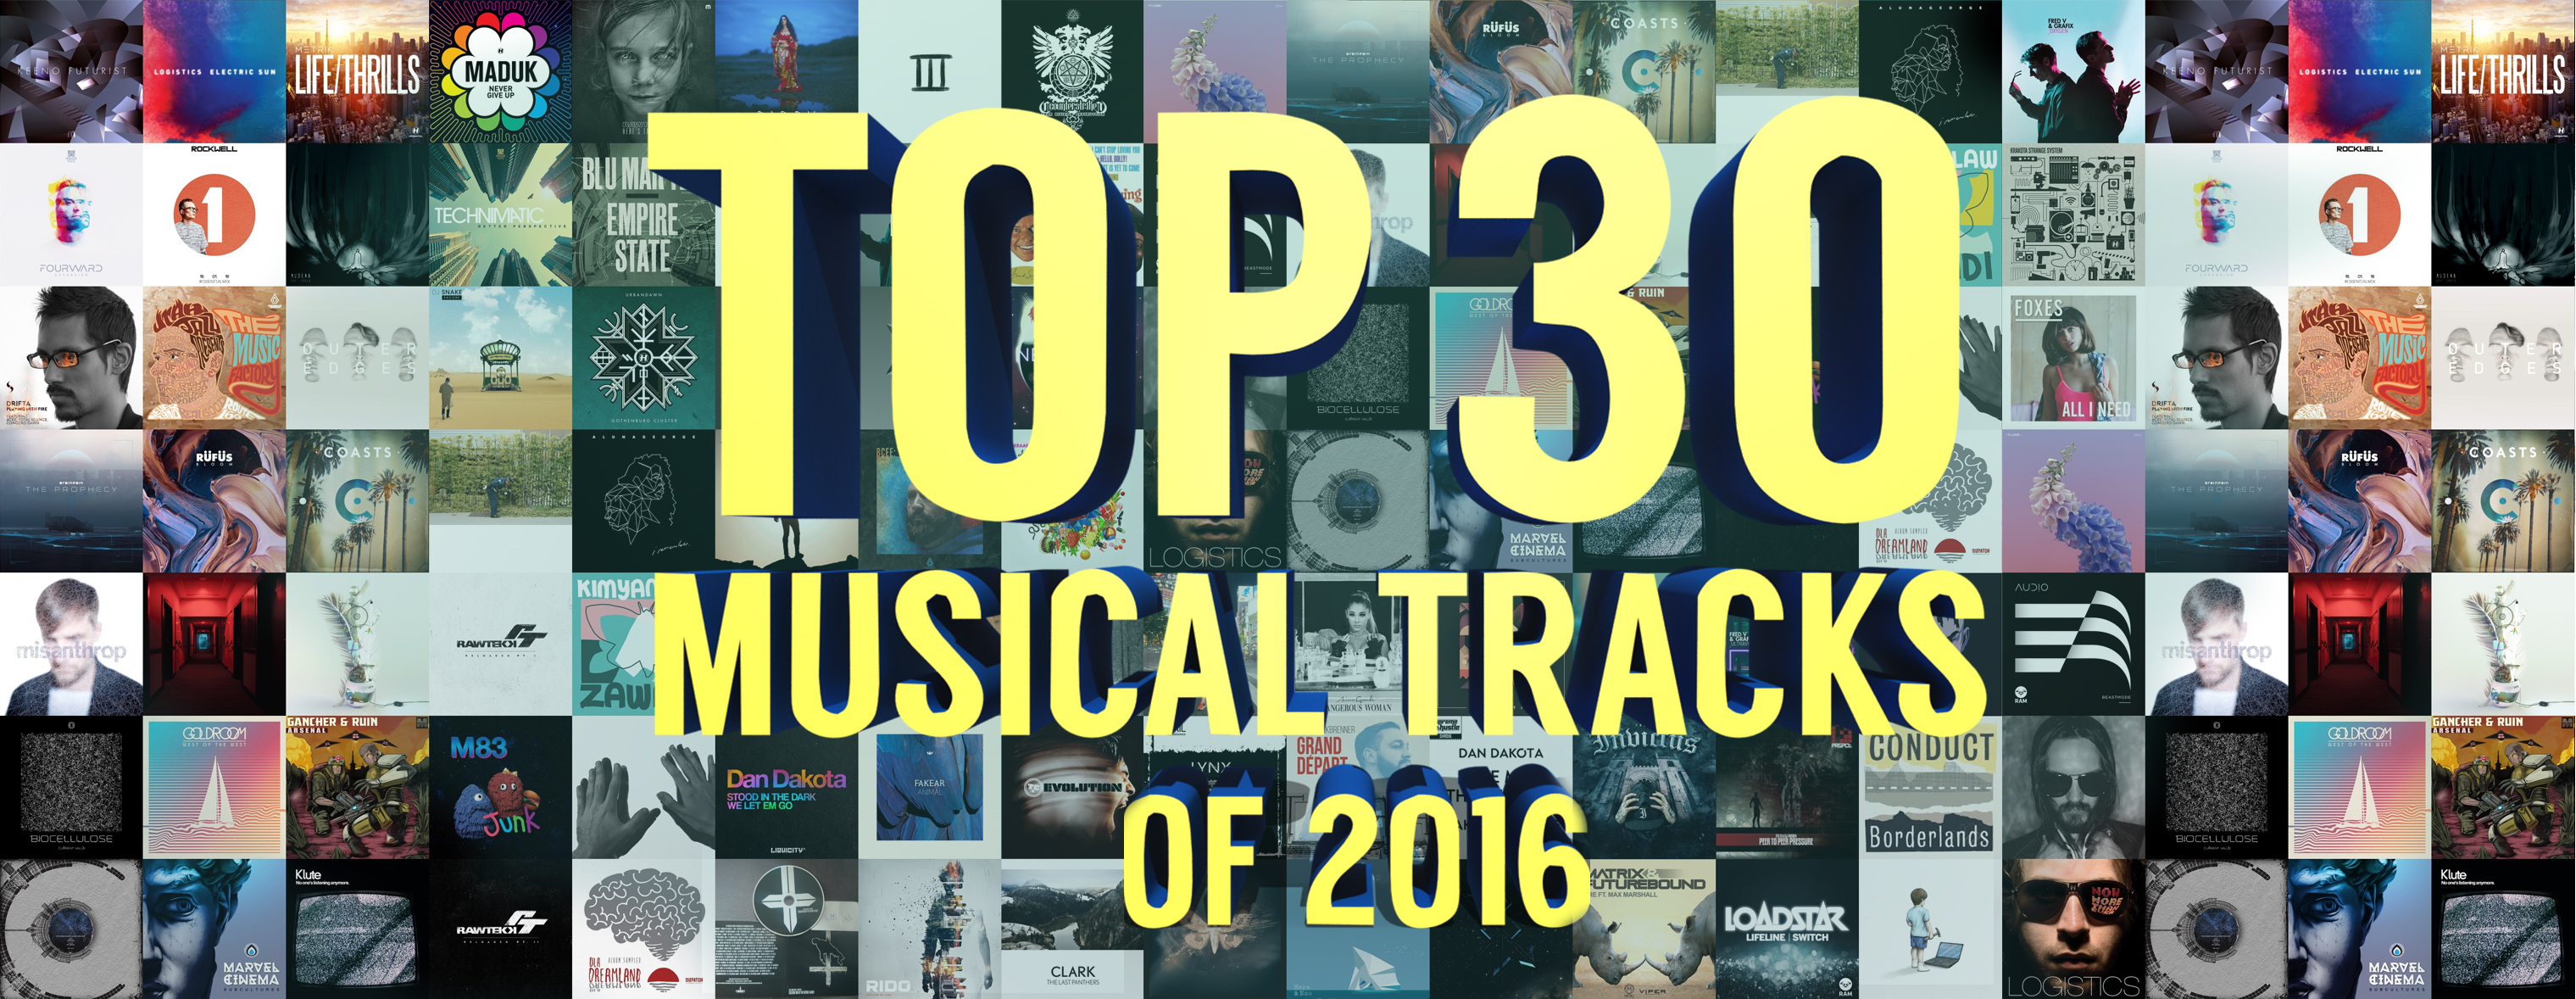 ТОП 30 Музыкальных треков 2016 по версии Splase / TOP 30 Musical Tracks of 2016 version by Splase